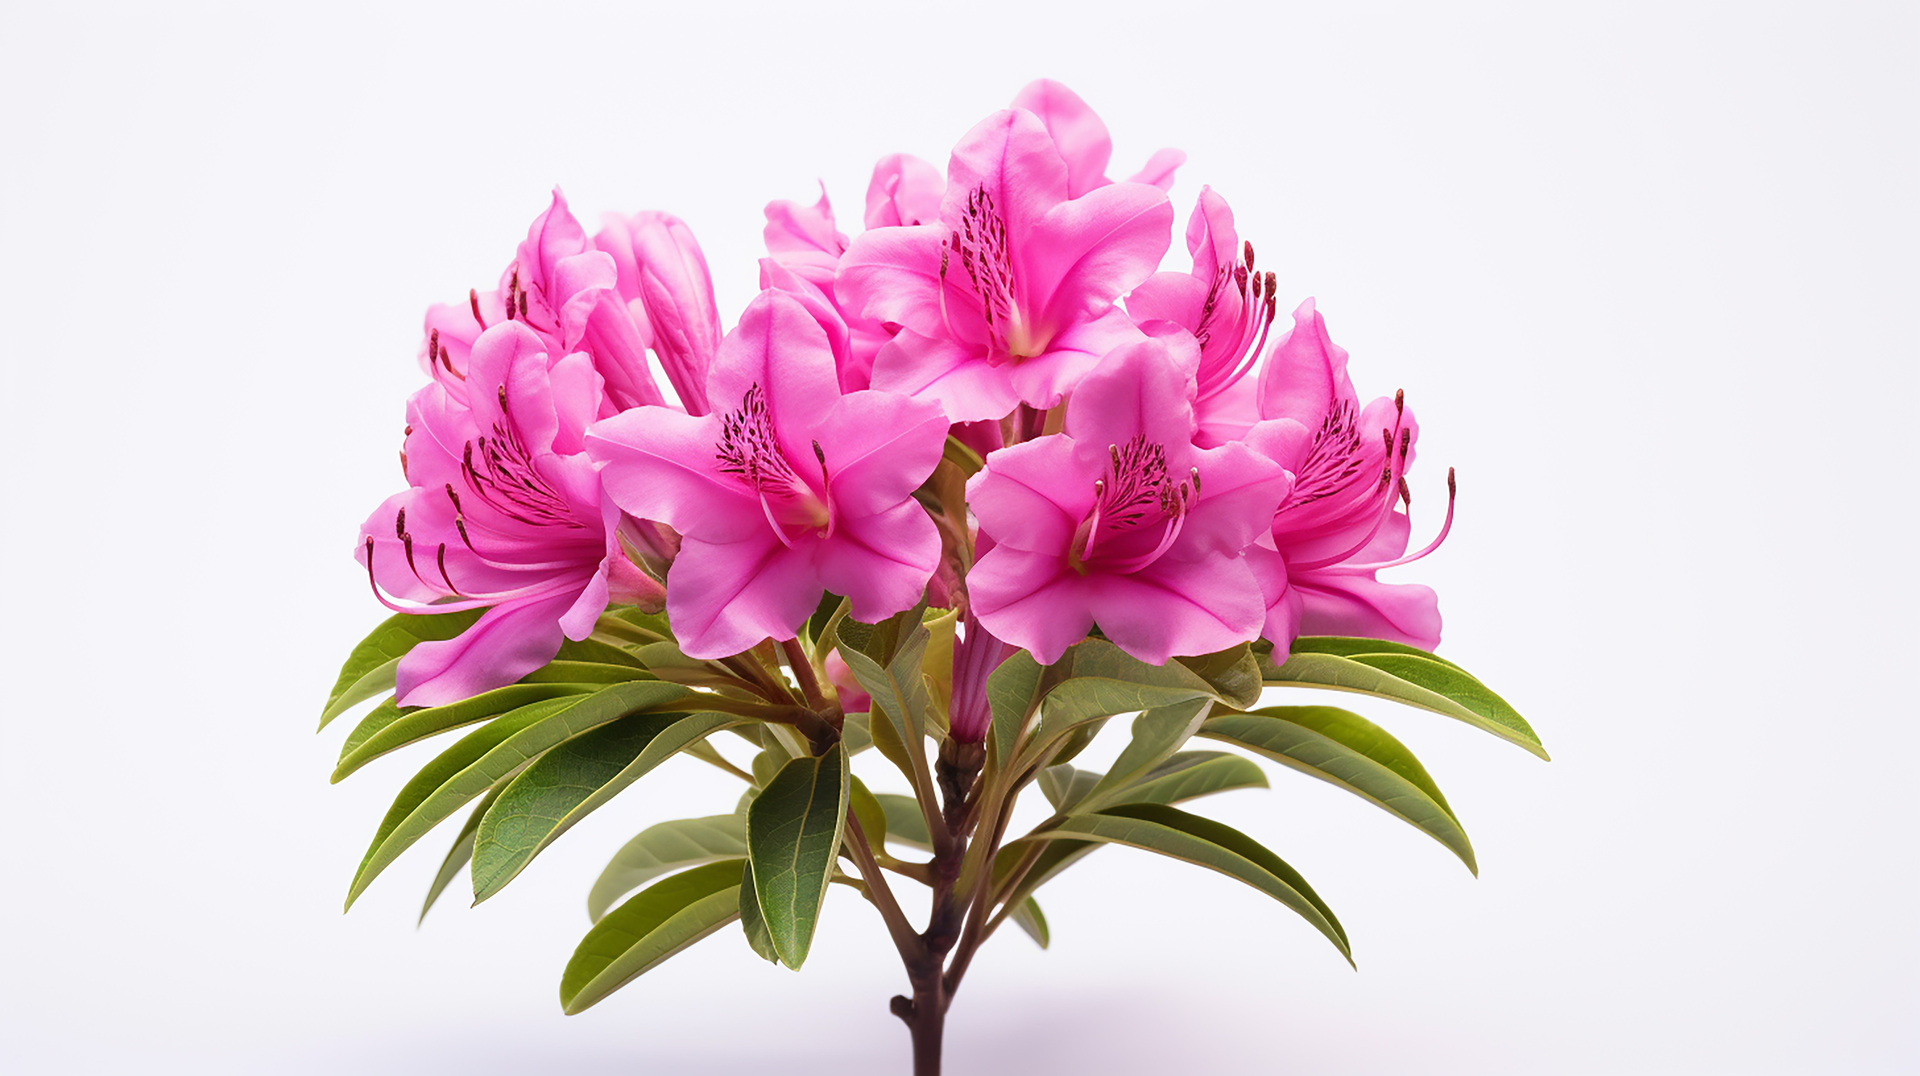 Kwiatowy arystokrata, Rhododendron Roseum Elegans, wznosi się dumnie w ogrodowej scenerii. Jego różowe kwiaty, jak puchate chmurki, delikatnie unoszą się na gałęziach, tworząc malowniczy taniec kolorów. To kwiecisty klejnot, który emanuje pięknem i wprawia w zachwyt każdego, kto ma przyjemność go podziwiać